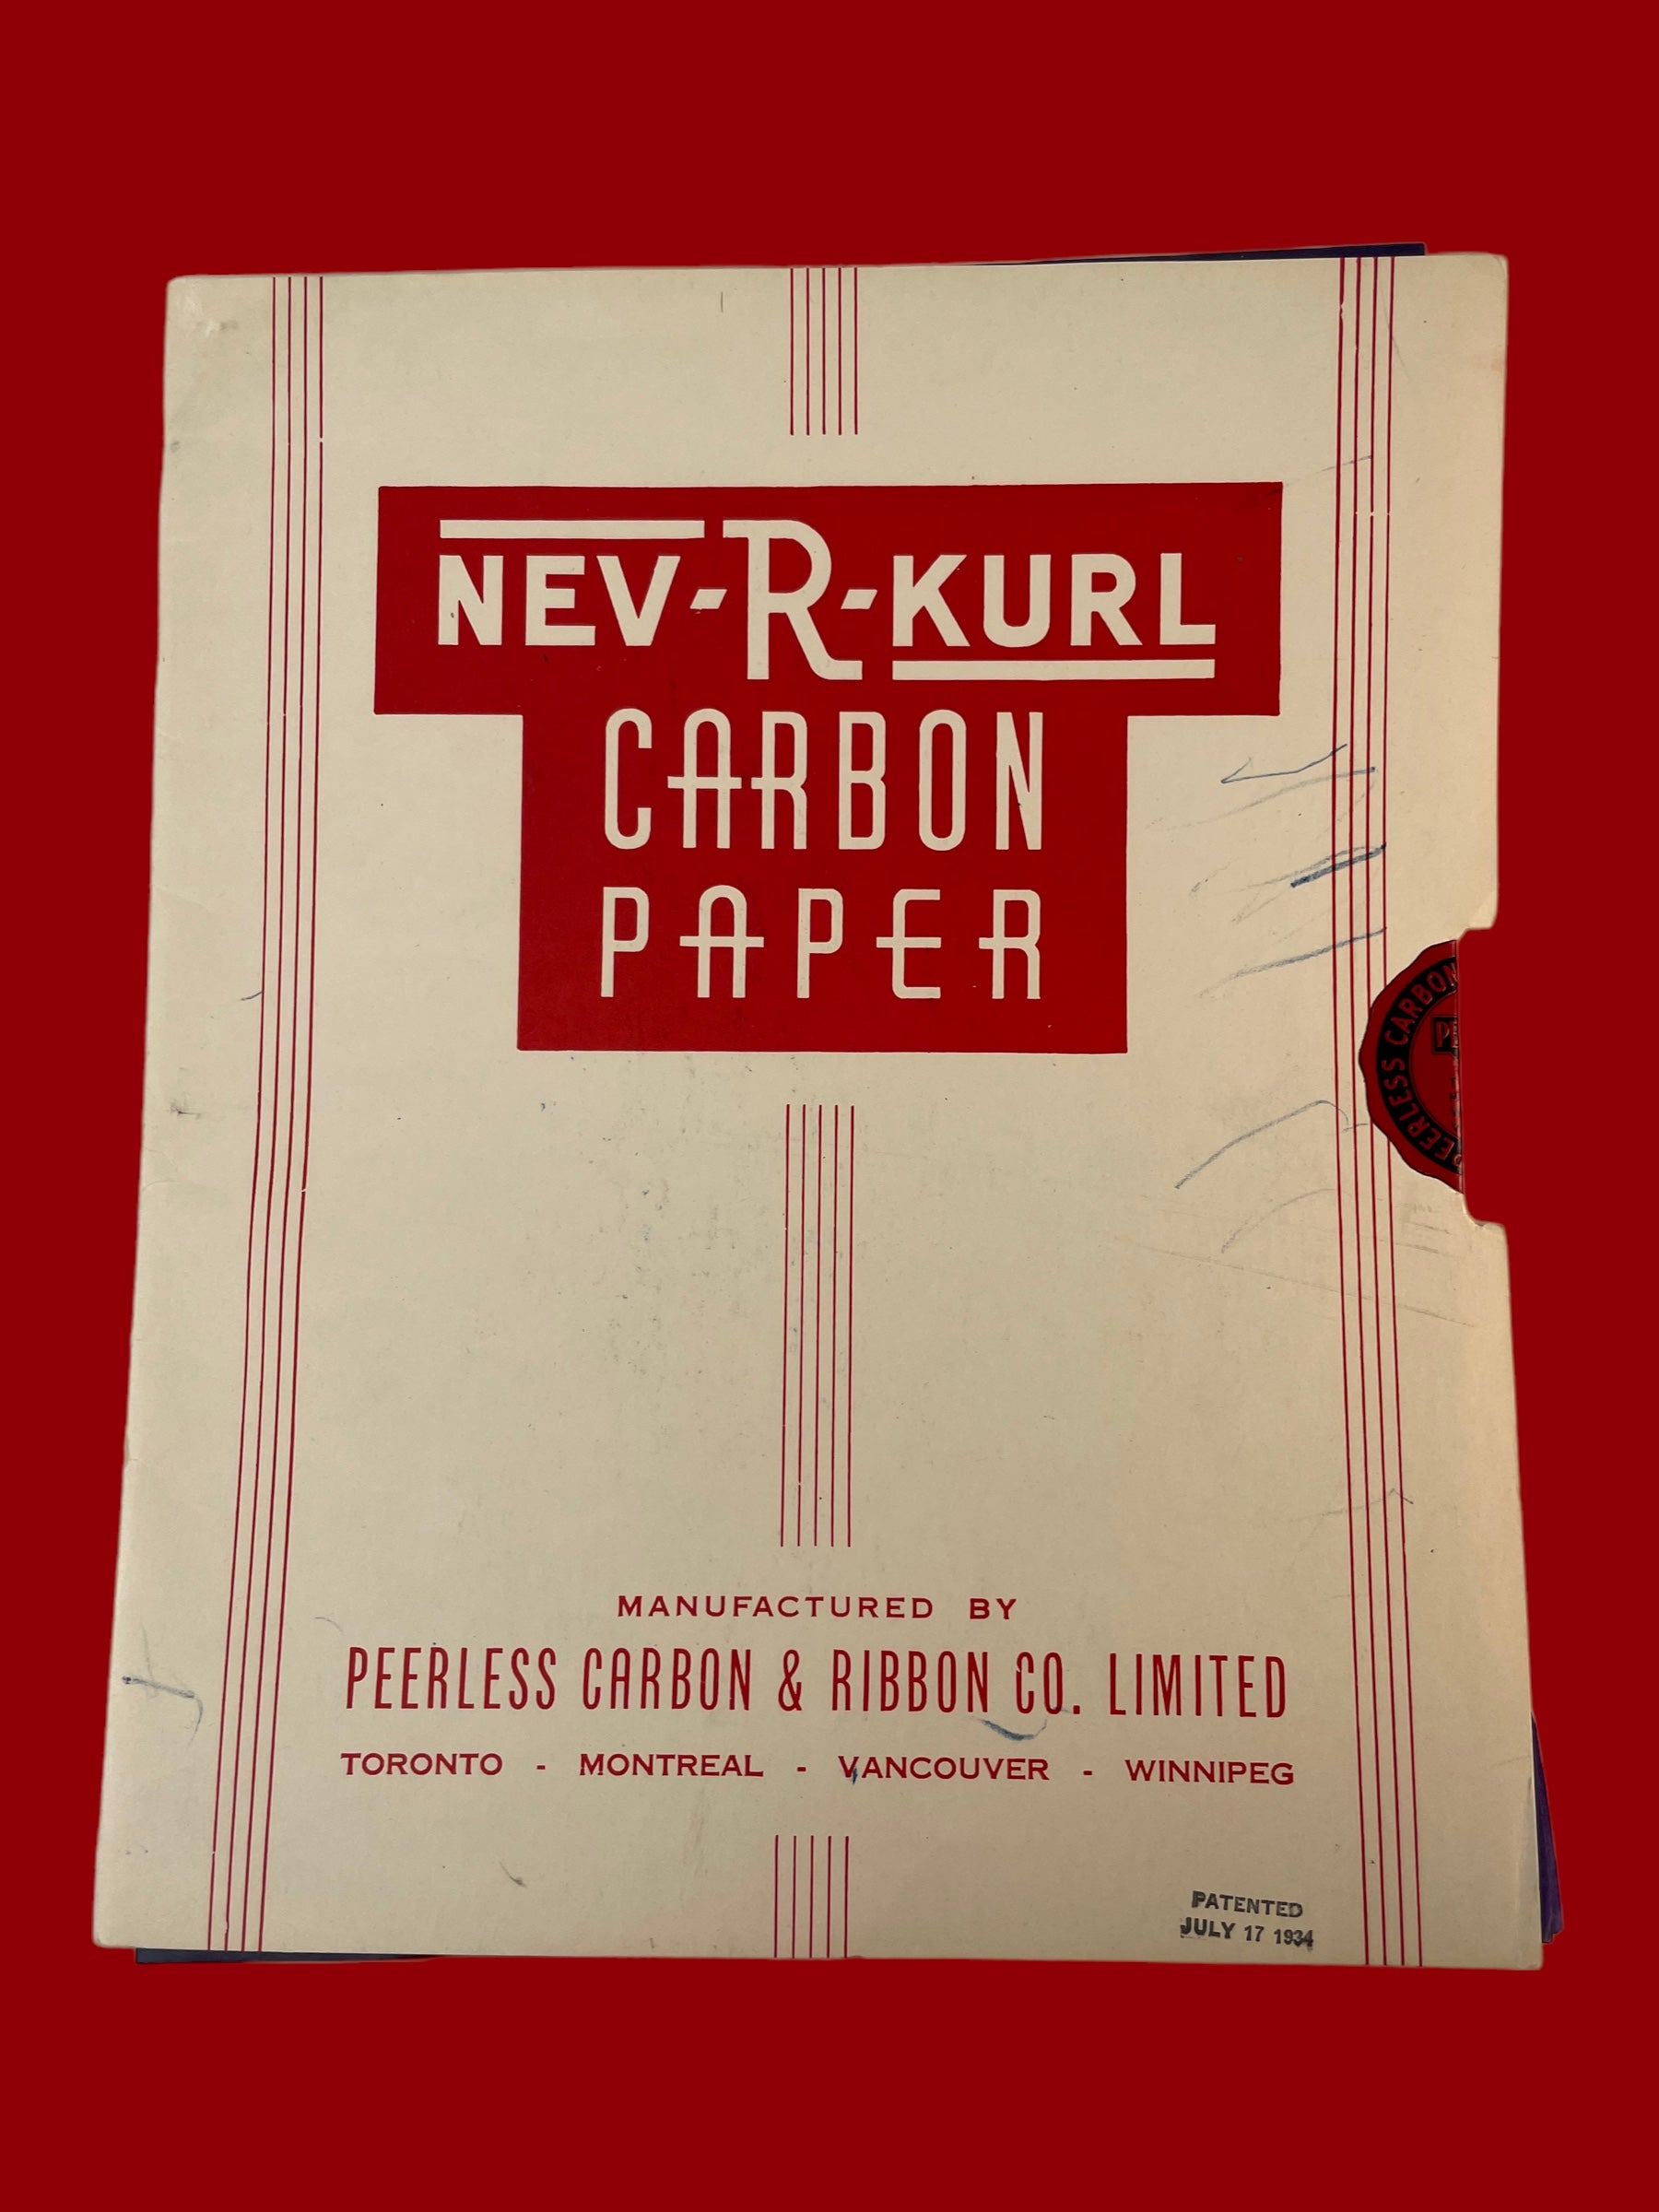 Papier carbone NEV-R-KURL, fabriqué par Peerless Carbon & Ribbon Co. Limited